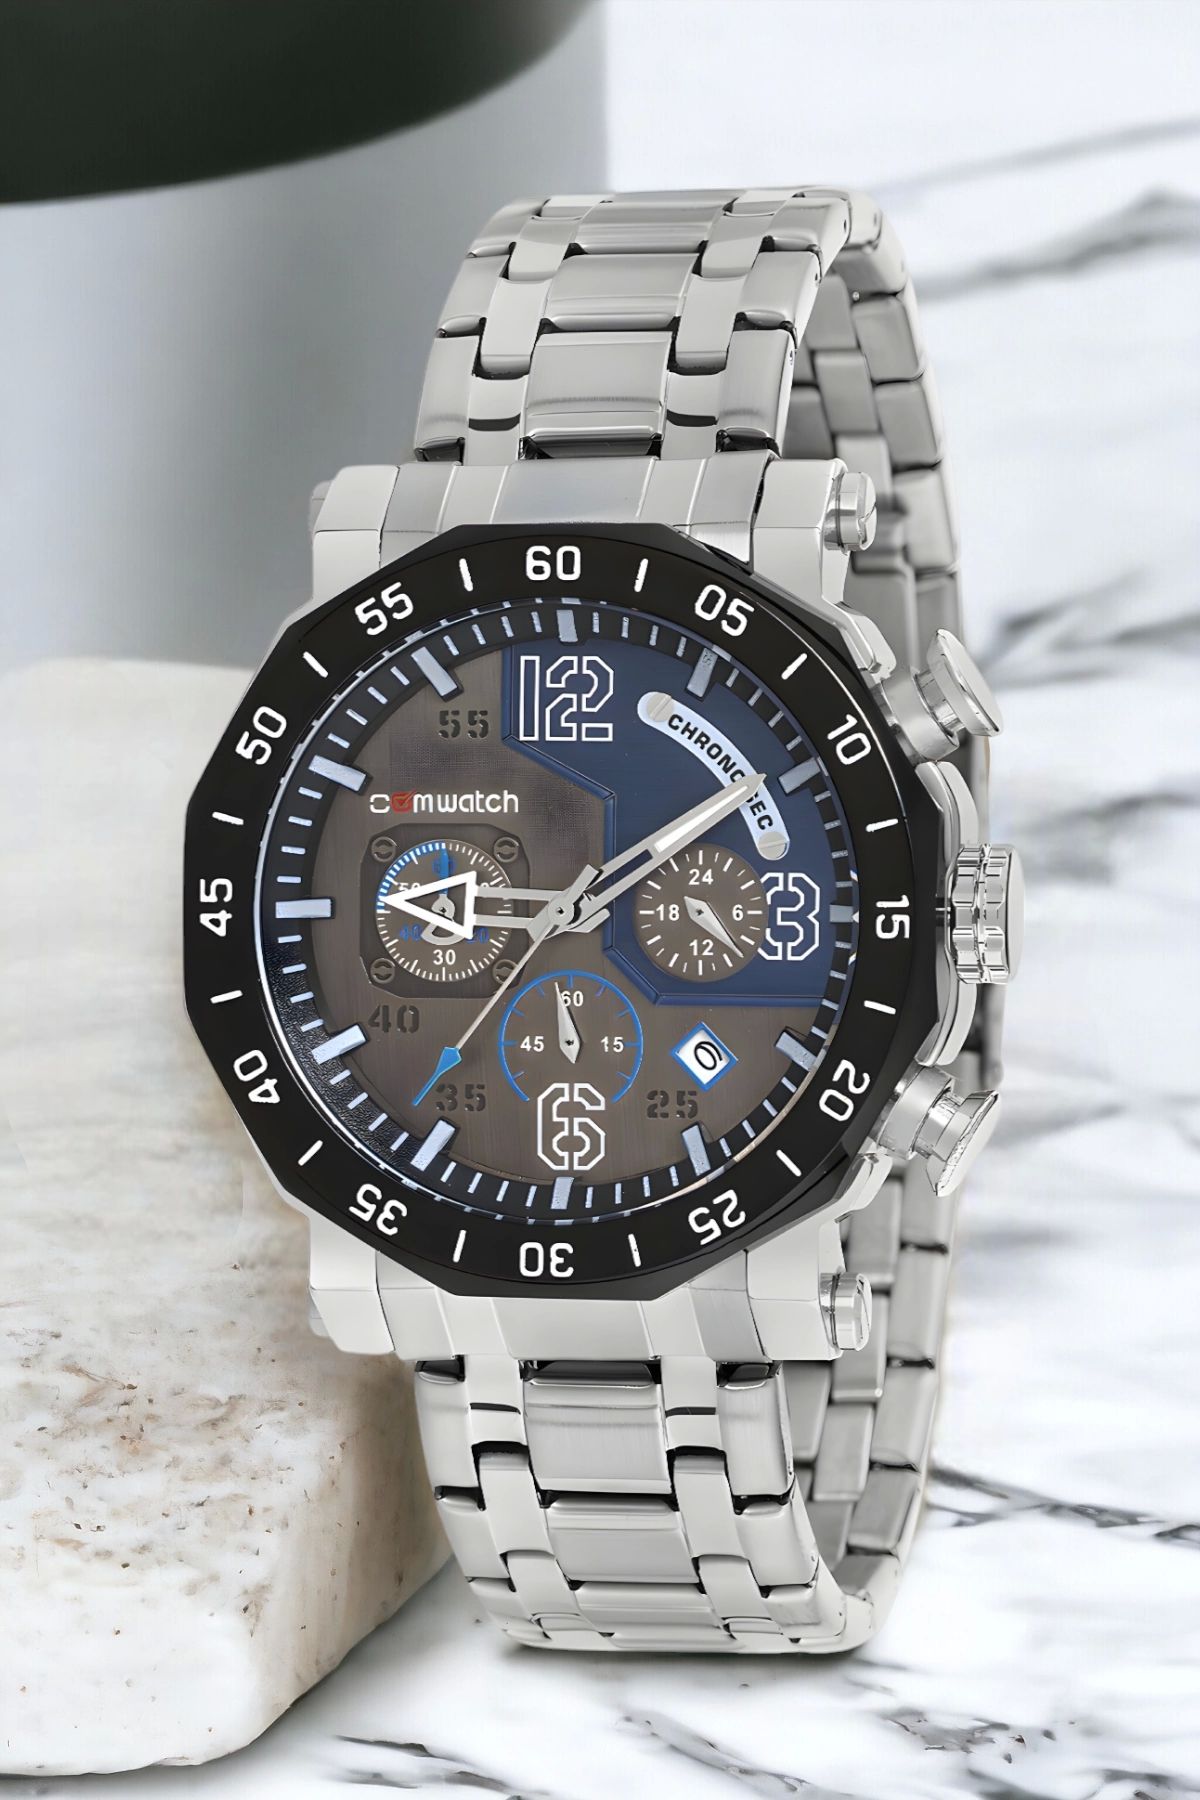 Comwatch Gümüş-mavi Zmcmw002 Erkek Kol Saati: Şıklık Ve Fonksiyonelliği Bir Arada Sunan Modern Tasar